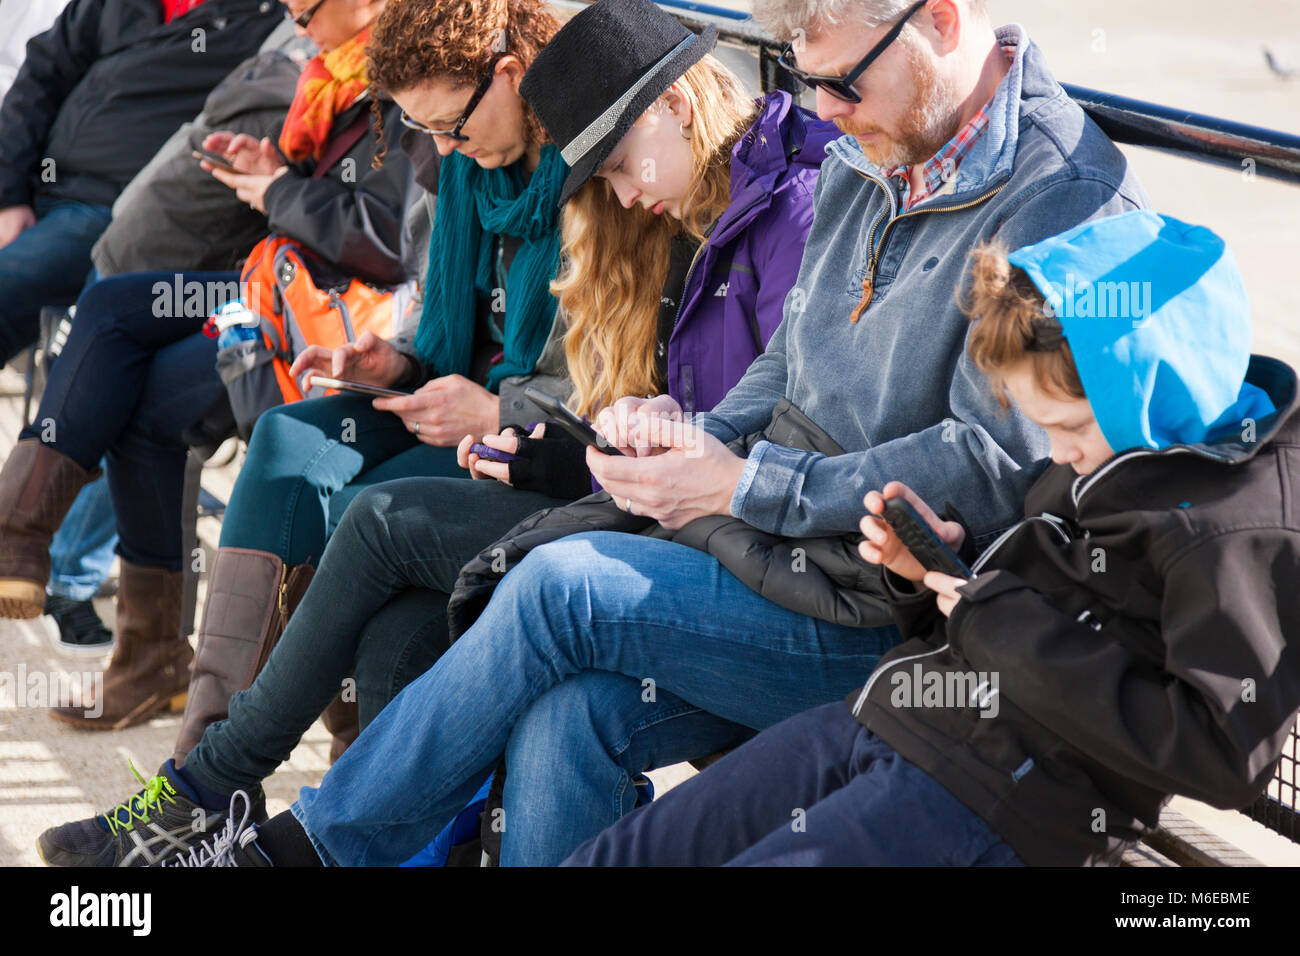 Famiglia seduta su una panchina, tutti dei quali sono simultaneamente guardando il loro telefono cellulare / Dispositivo / dispositivi, scrivere messaggi o navigare utilizzando / web / internet. Foto Stock